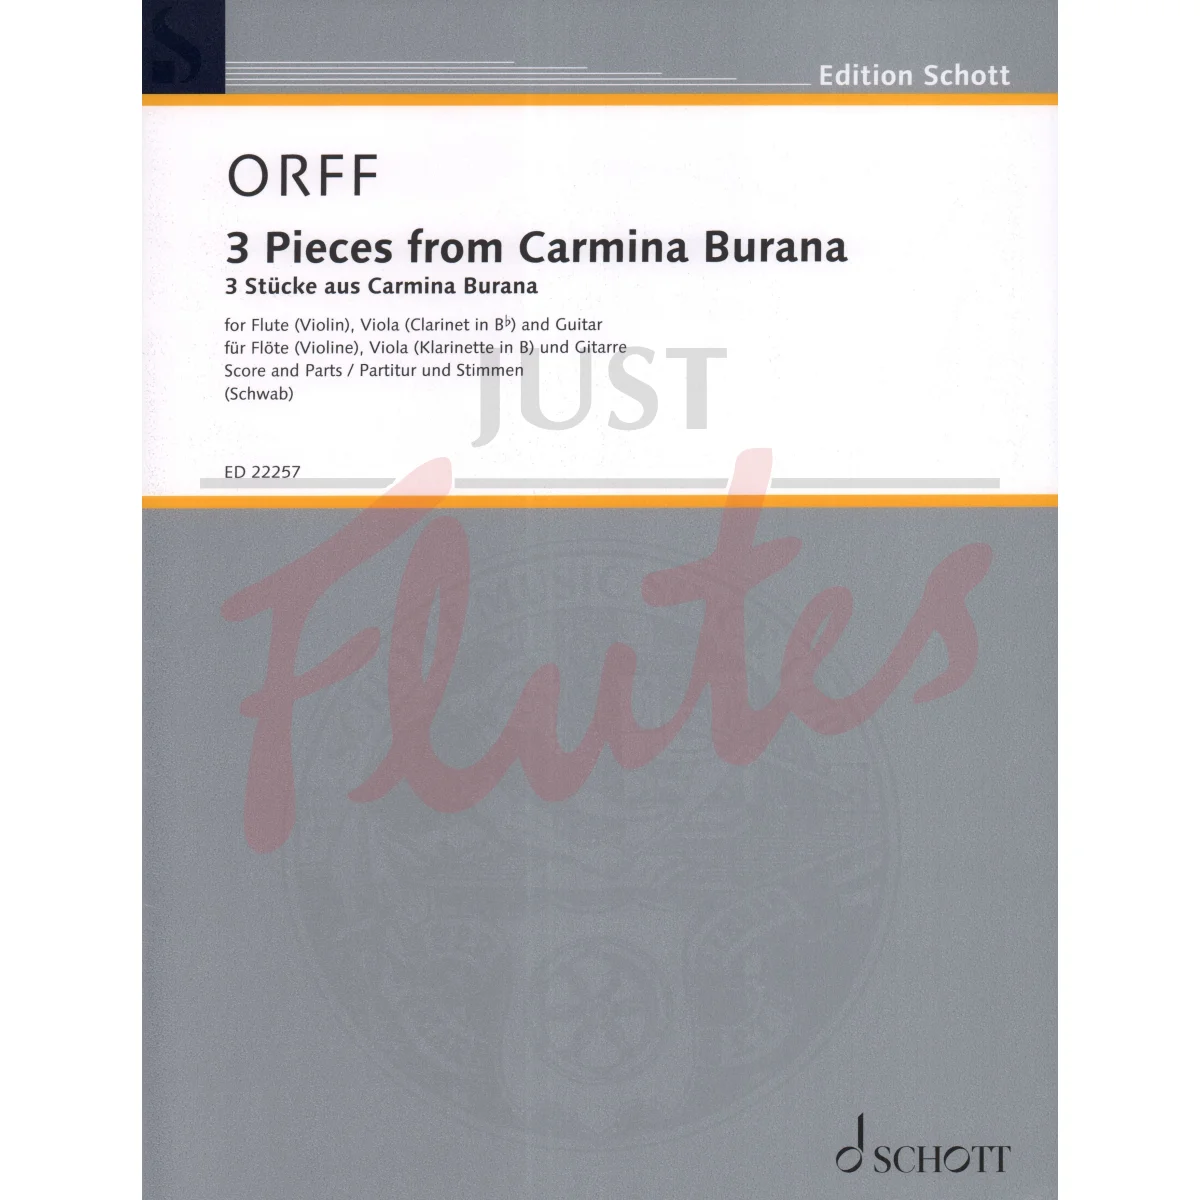 3 Pieces from Carmina Burana for Flute/Violin, Viola/Clarinet and Guitar